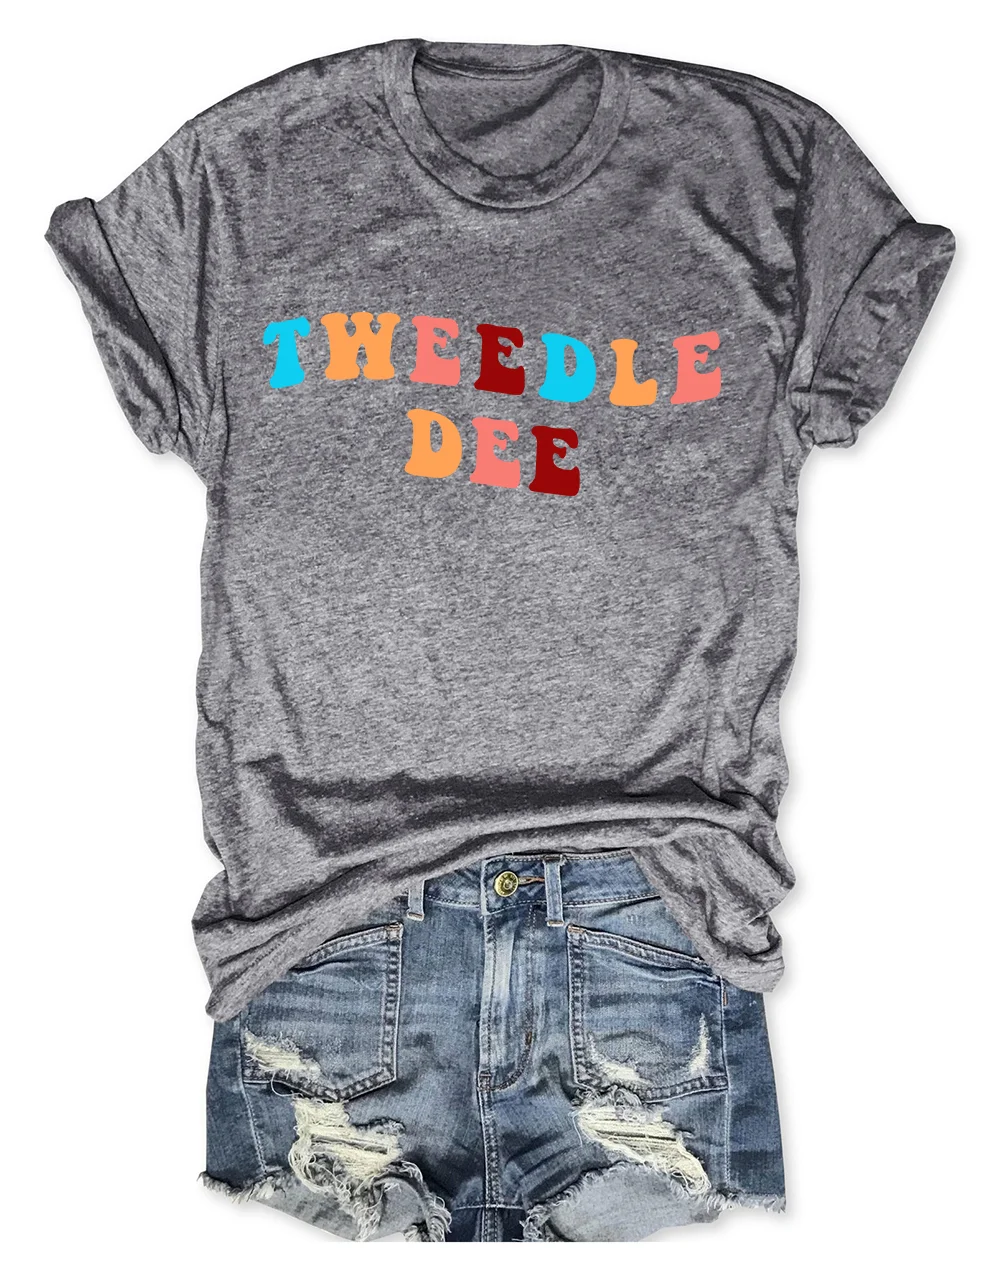 Tweedle Dee/Tweedle Dumbass T-Shirt